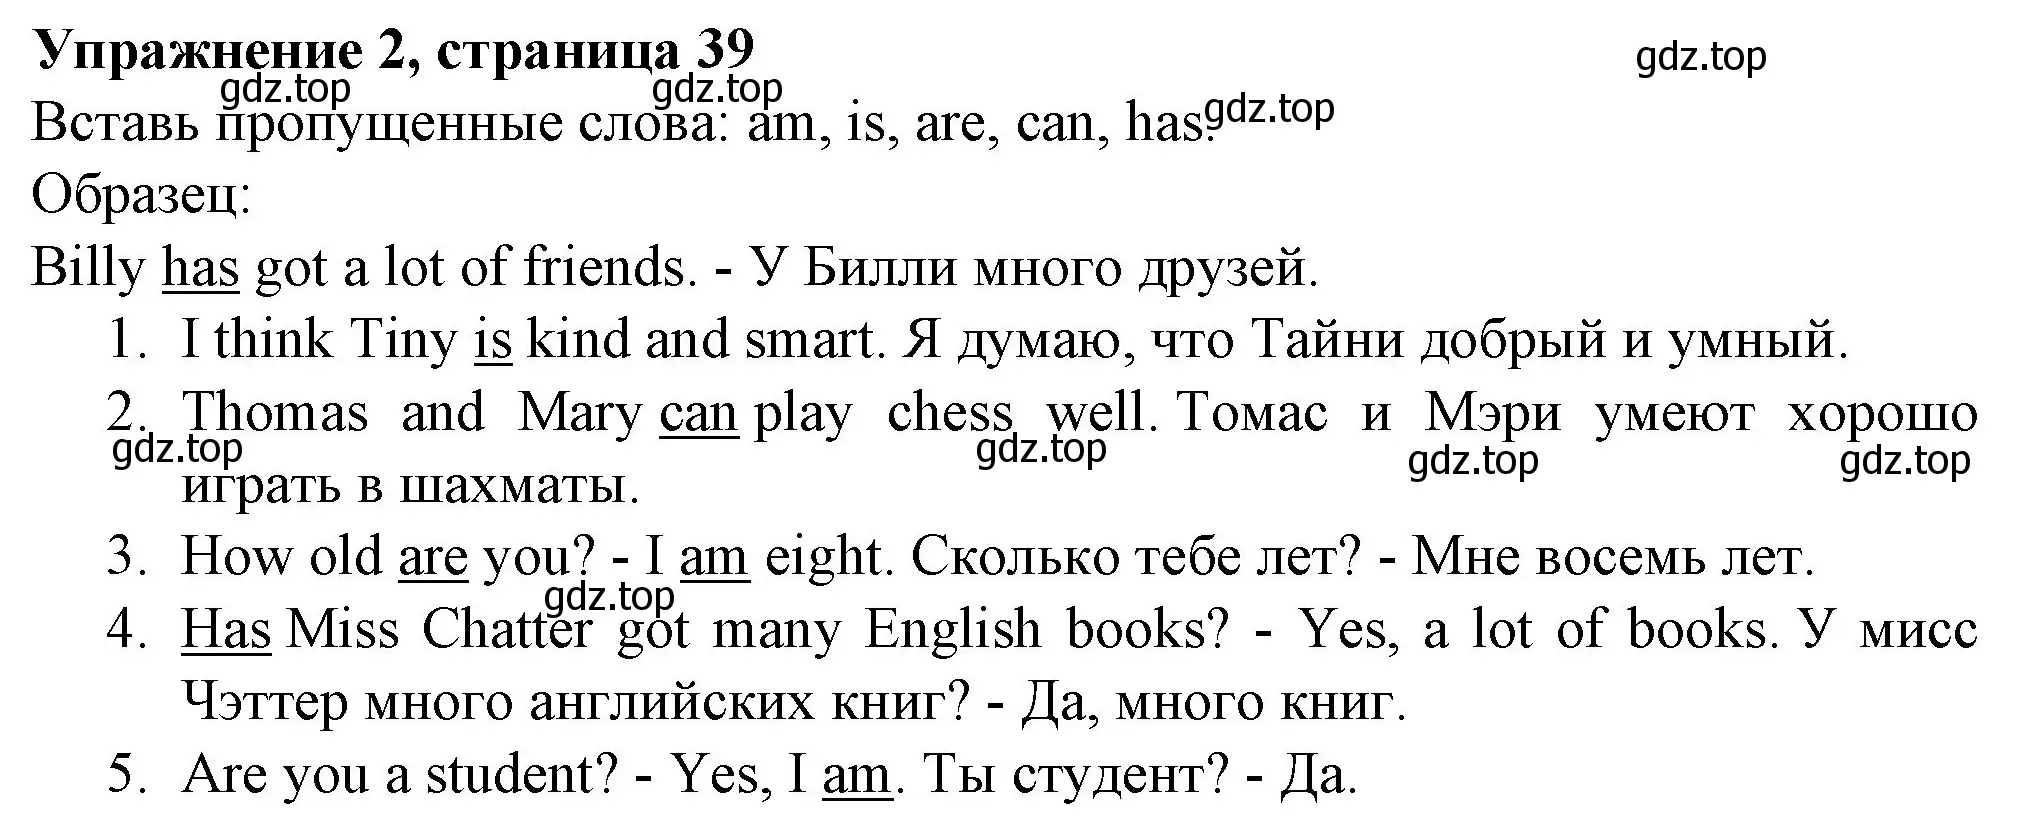 Решение номер 2 (страница 39) гдз по английскому языку 3 класс Биболетова, Денисенко, рабочая тетрадь